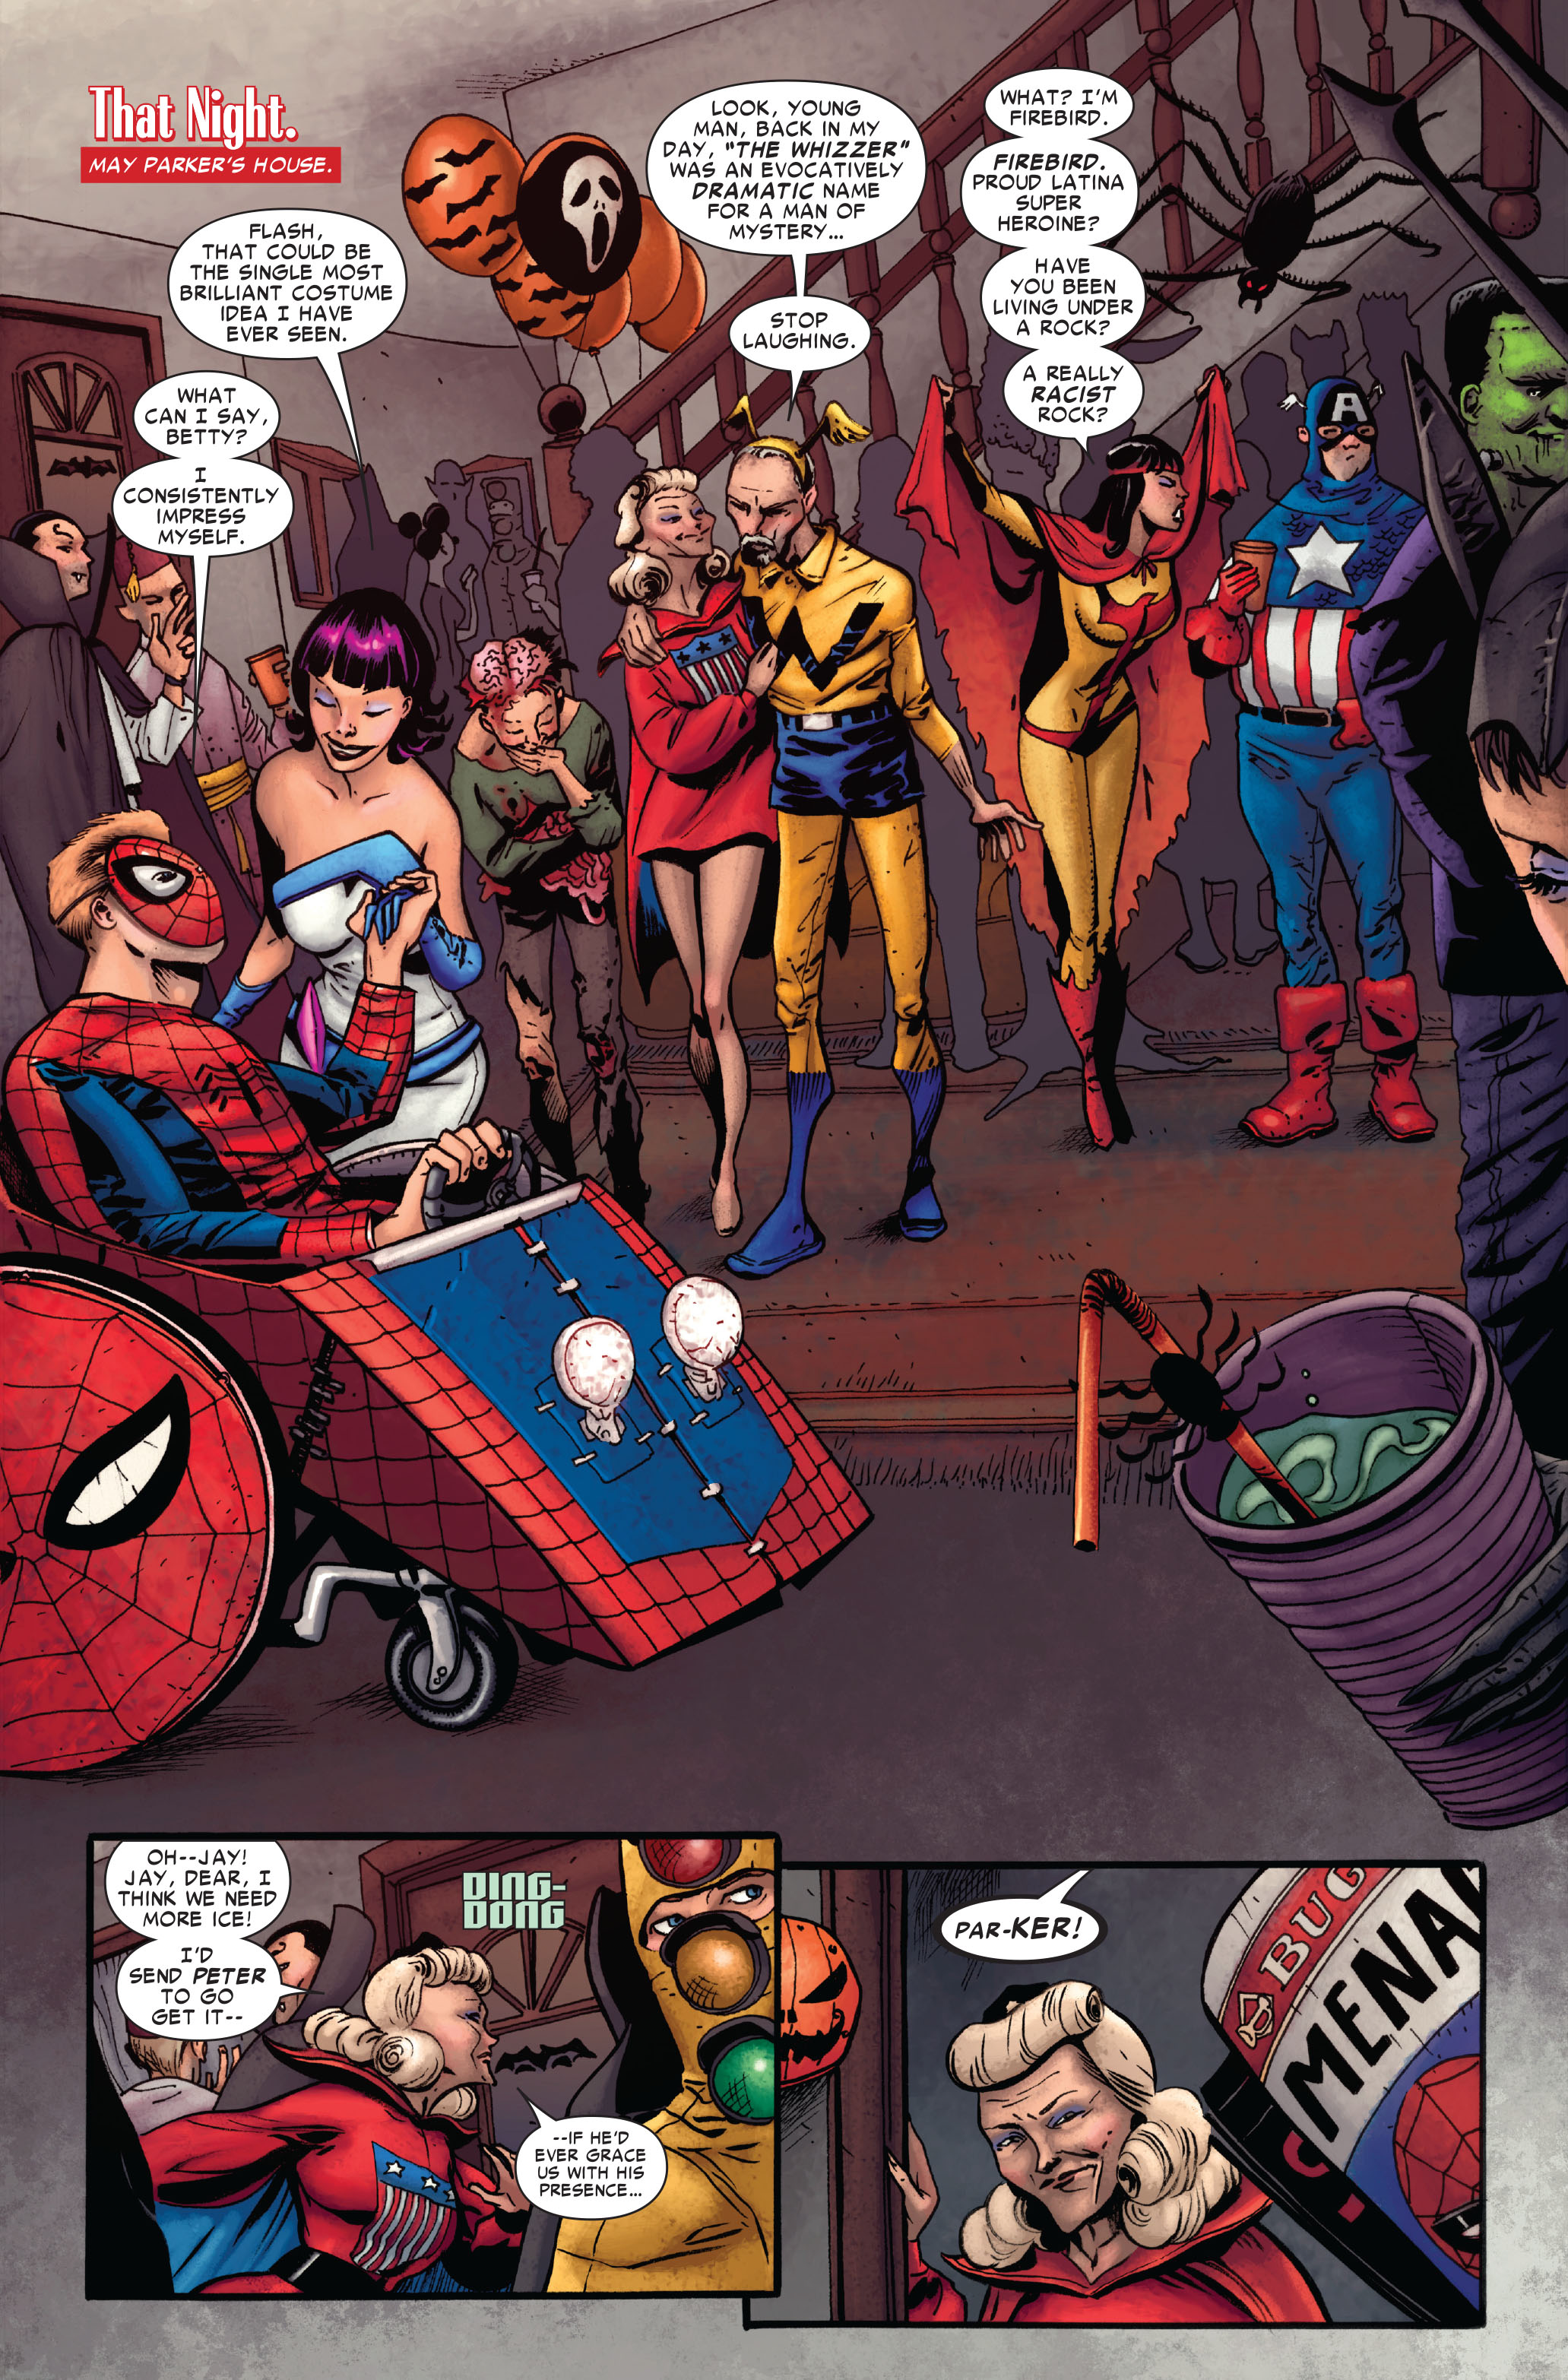 Amazing Spider-Man Vol. 6 #6 (2022) Amazing Spider-Man Vol. 6 #5 (2022) Ama...